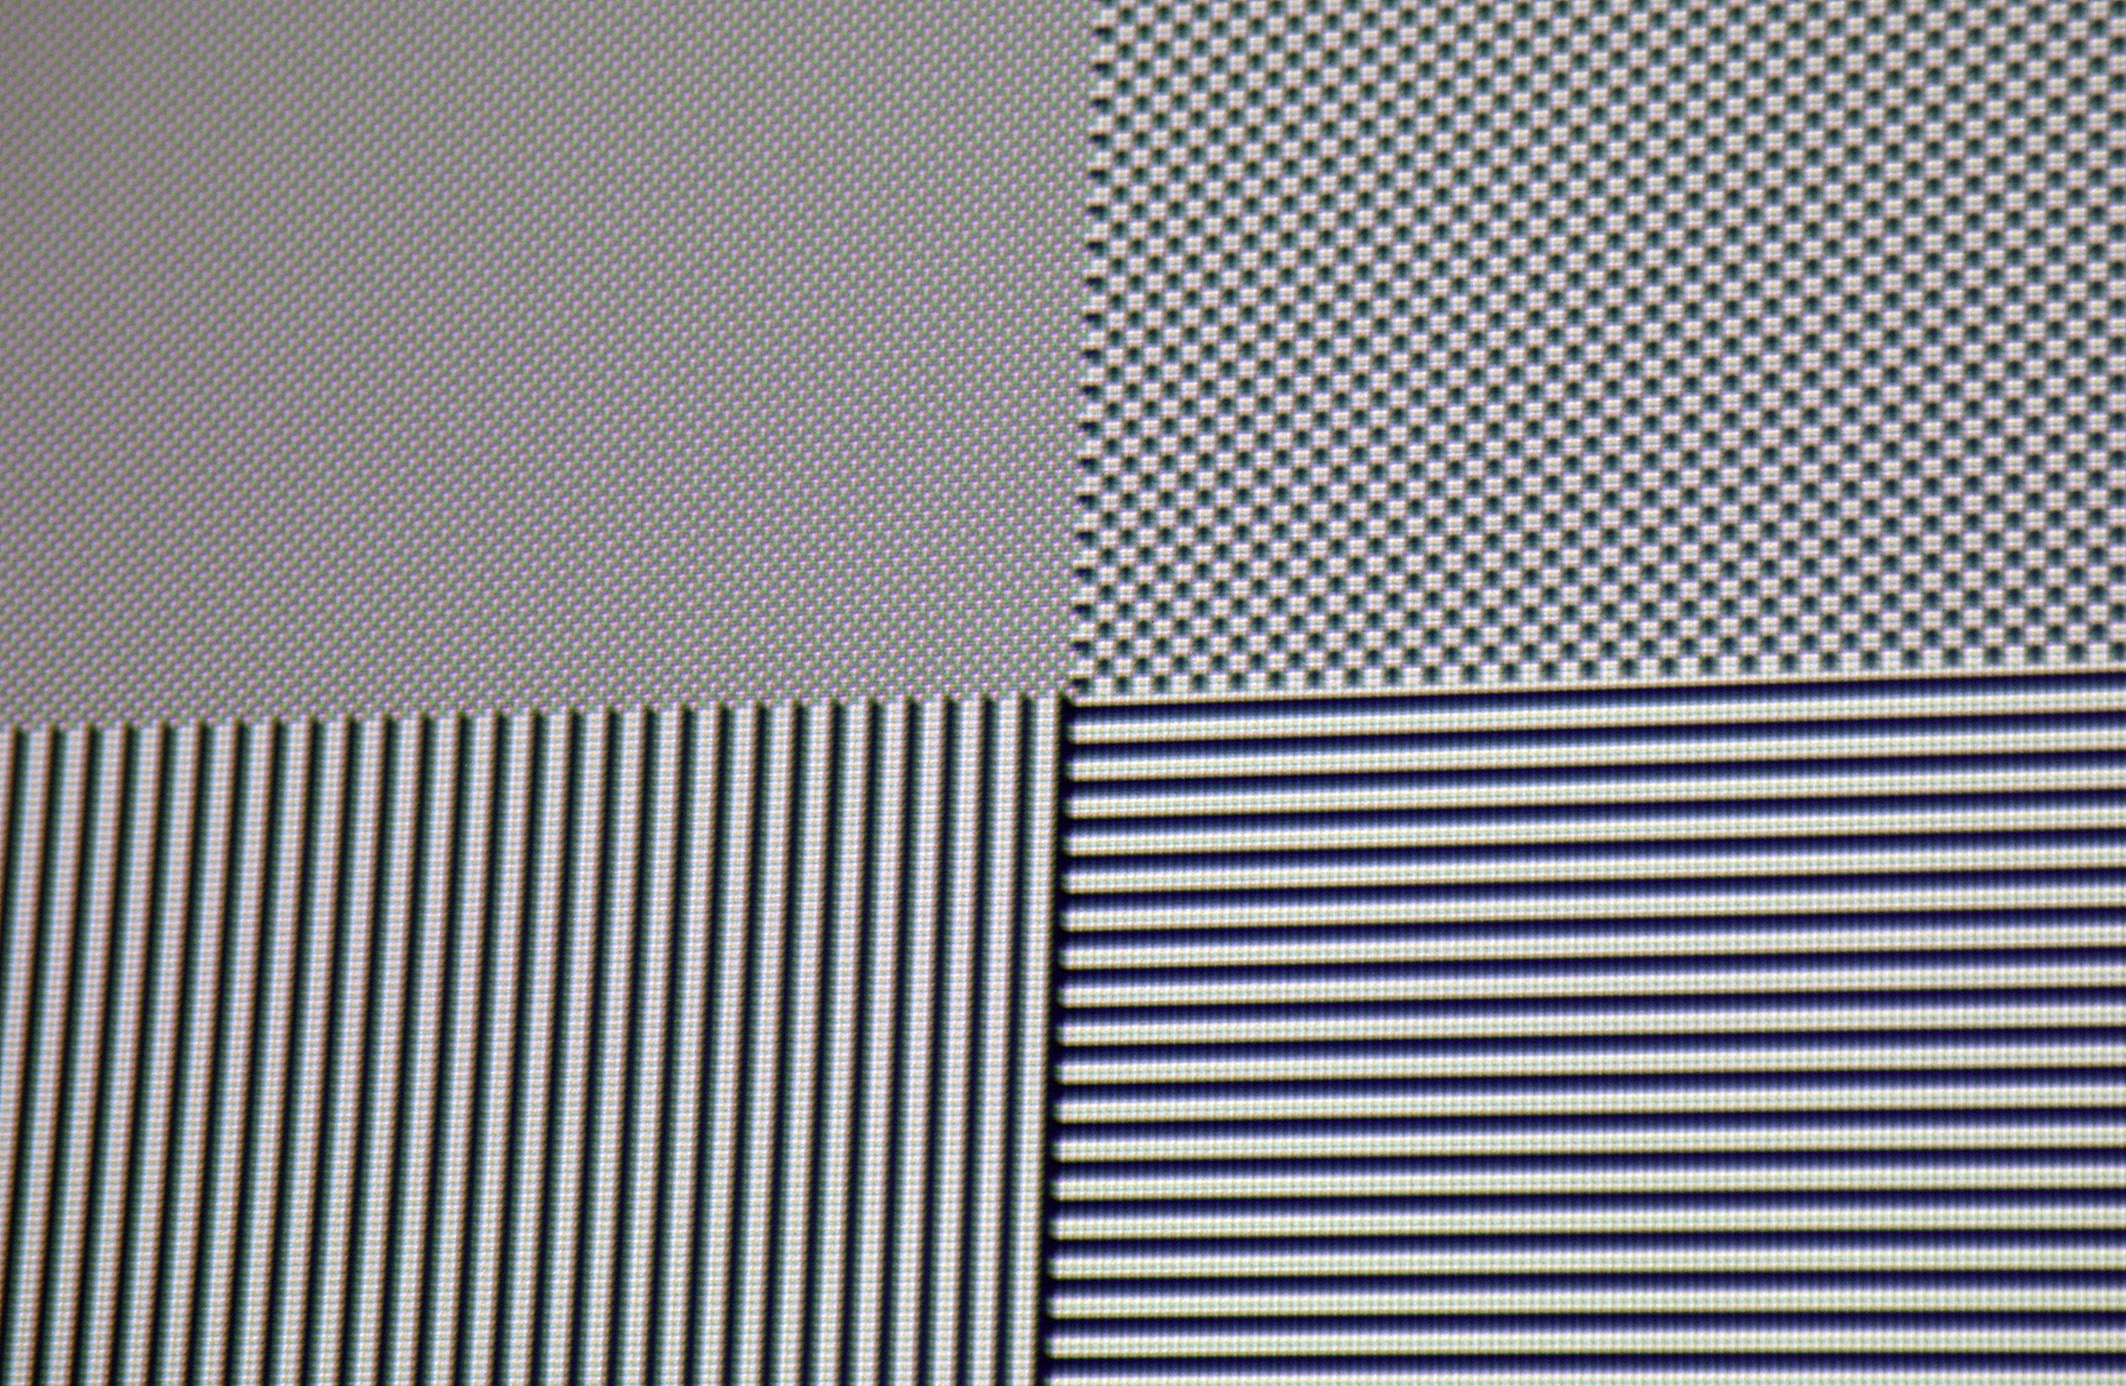 Full-HD-Pixelauflösung: Alle schwarz/weißen Felder in Pixelauflösung stellt der Optoma HD 29 Darbee auf der Leinwand dar. Allenfalls kleinste Farbsäume (chromatische Aberration) sind vorhanden, welche den Bildeindruck in keiner Weise schmälern, da sie selbst aus relativ nahen Betrachtungsabständen nicht zu erkennen sind.